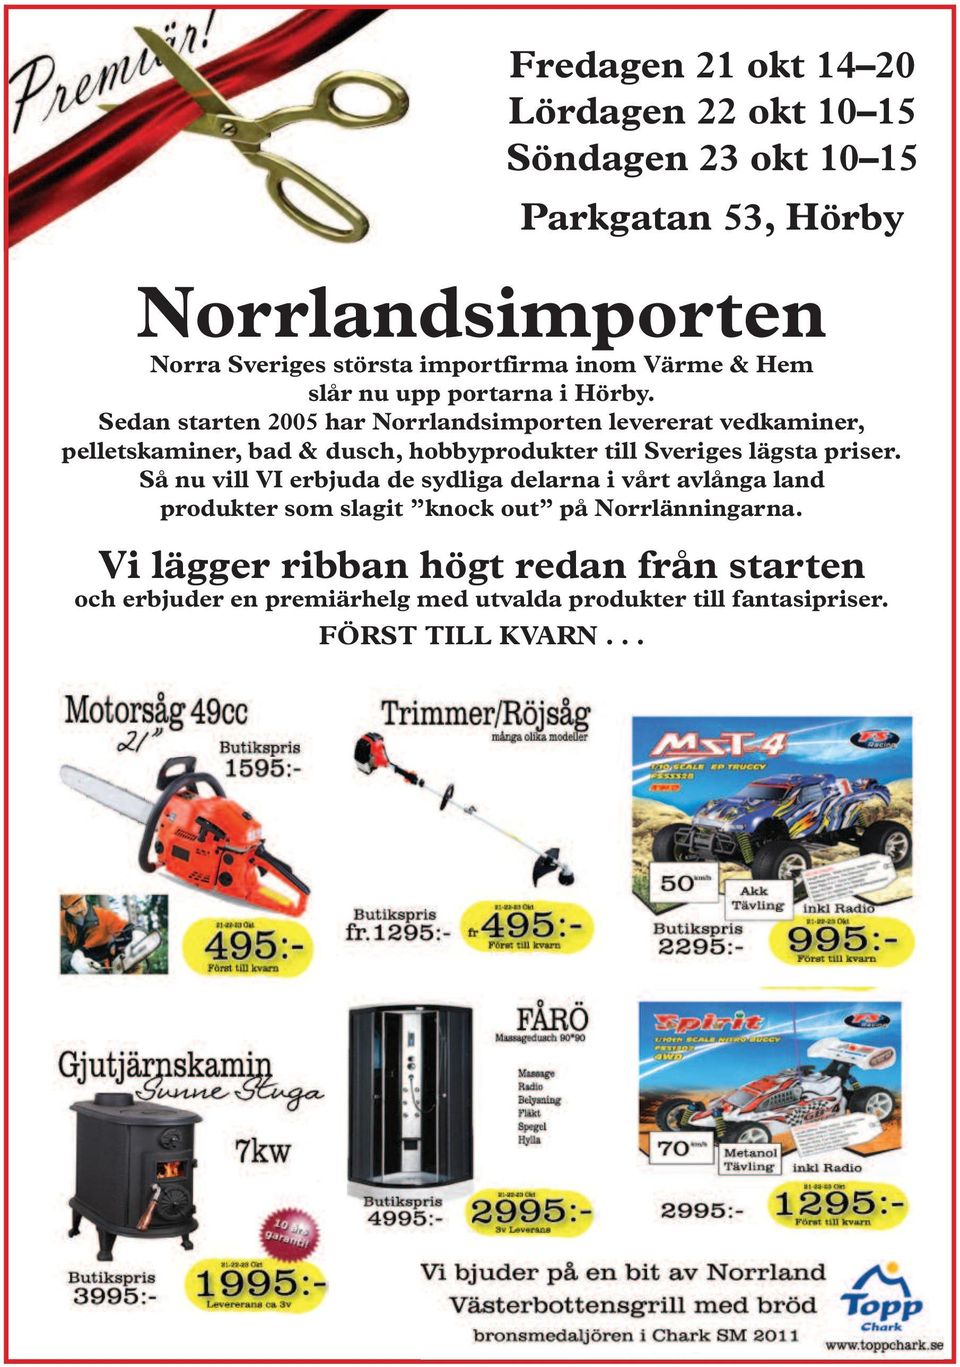 Sedan starten 2005 har Norrlandsimporten levererat vedkaminer, pelletskaminer, bad & dusch, hobbyprodukter till Sveriges lägsta priser.